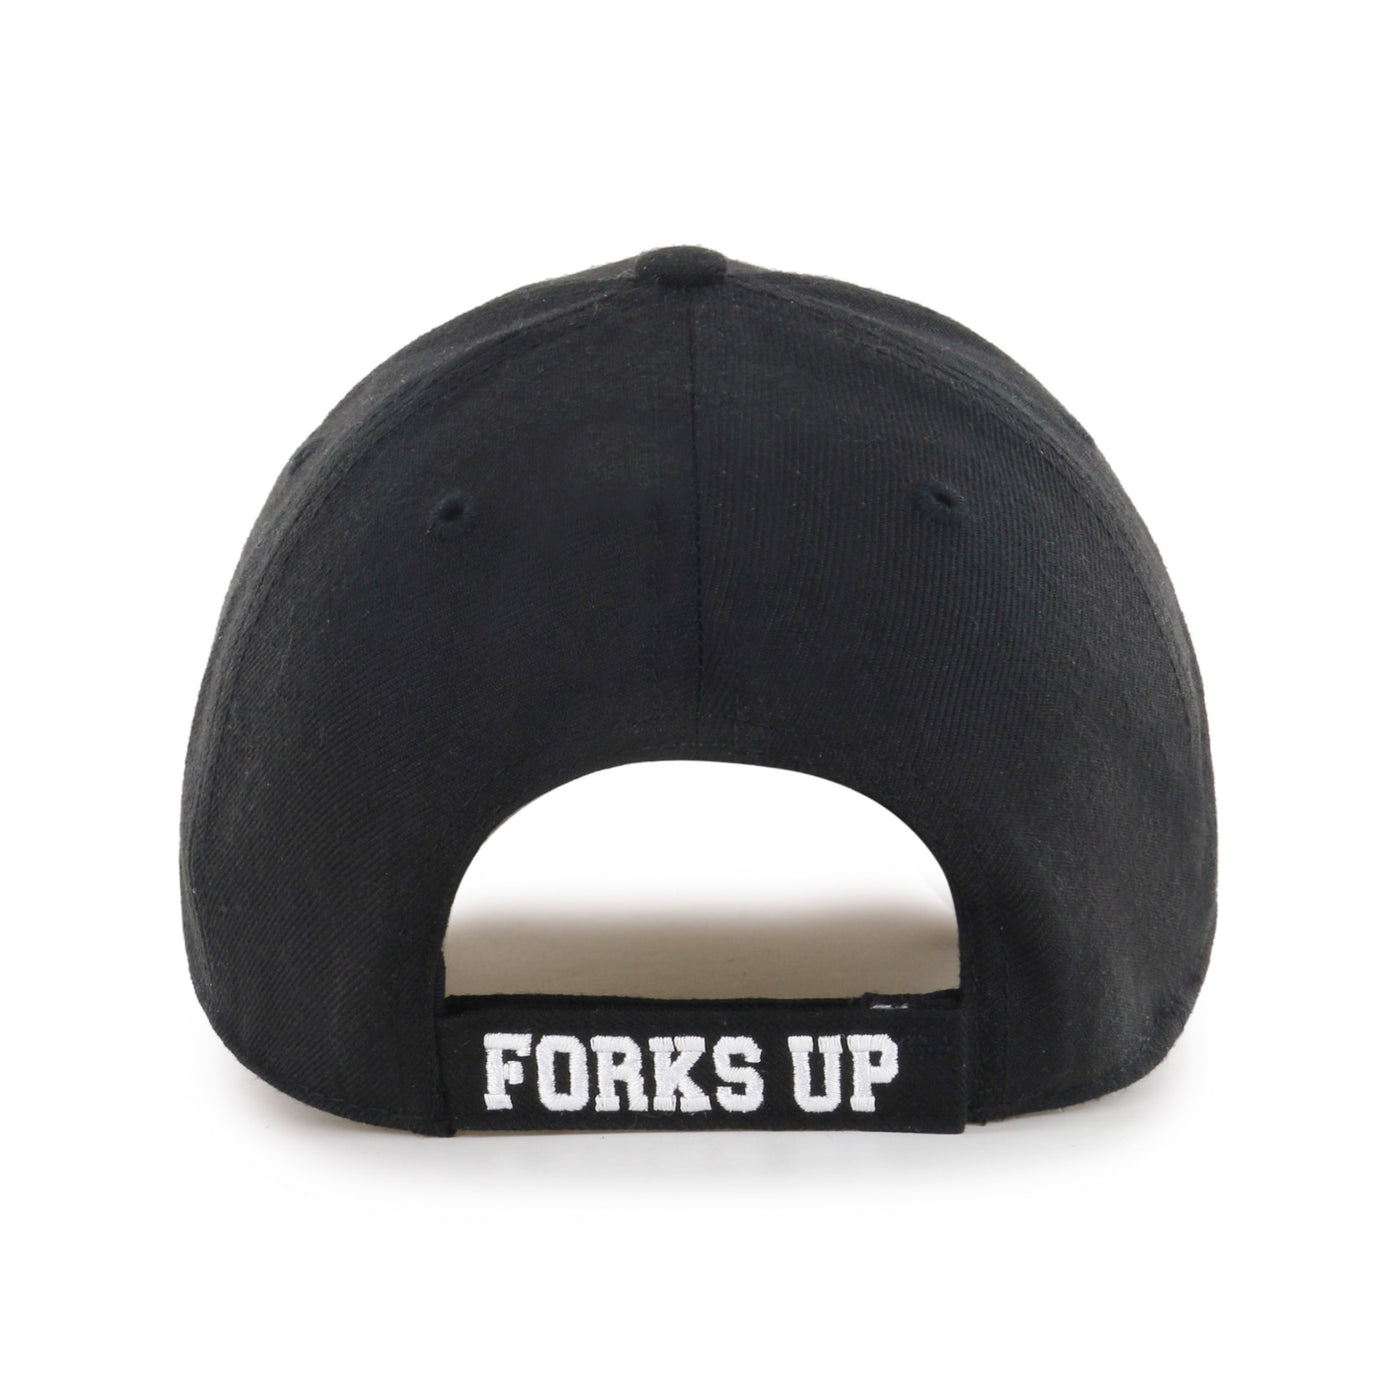 Back of ASU black adjustable hat with 'Forks Up' lettering on the adjustable strap